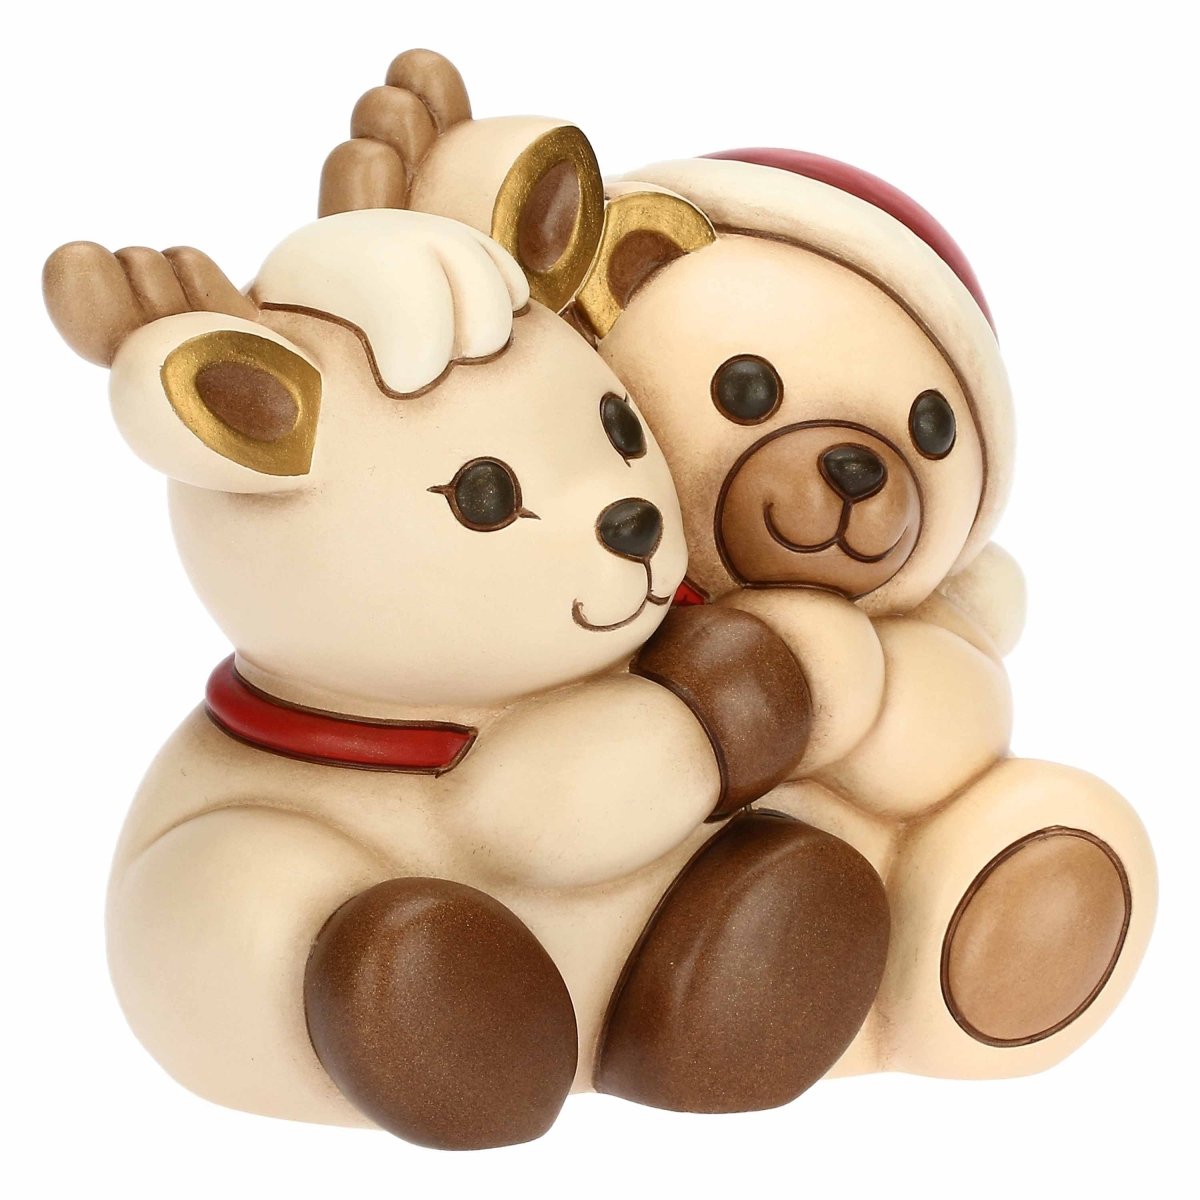 Thun - coppia teddy e renna abbracciati | rohome - Rohome